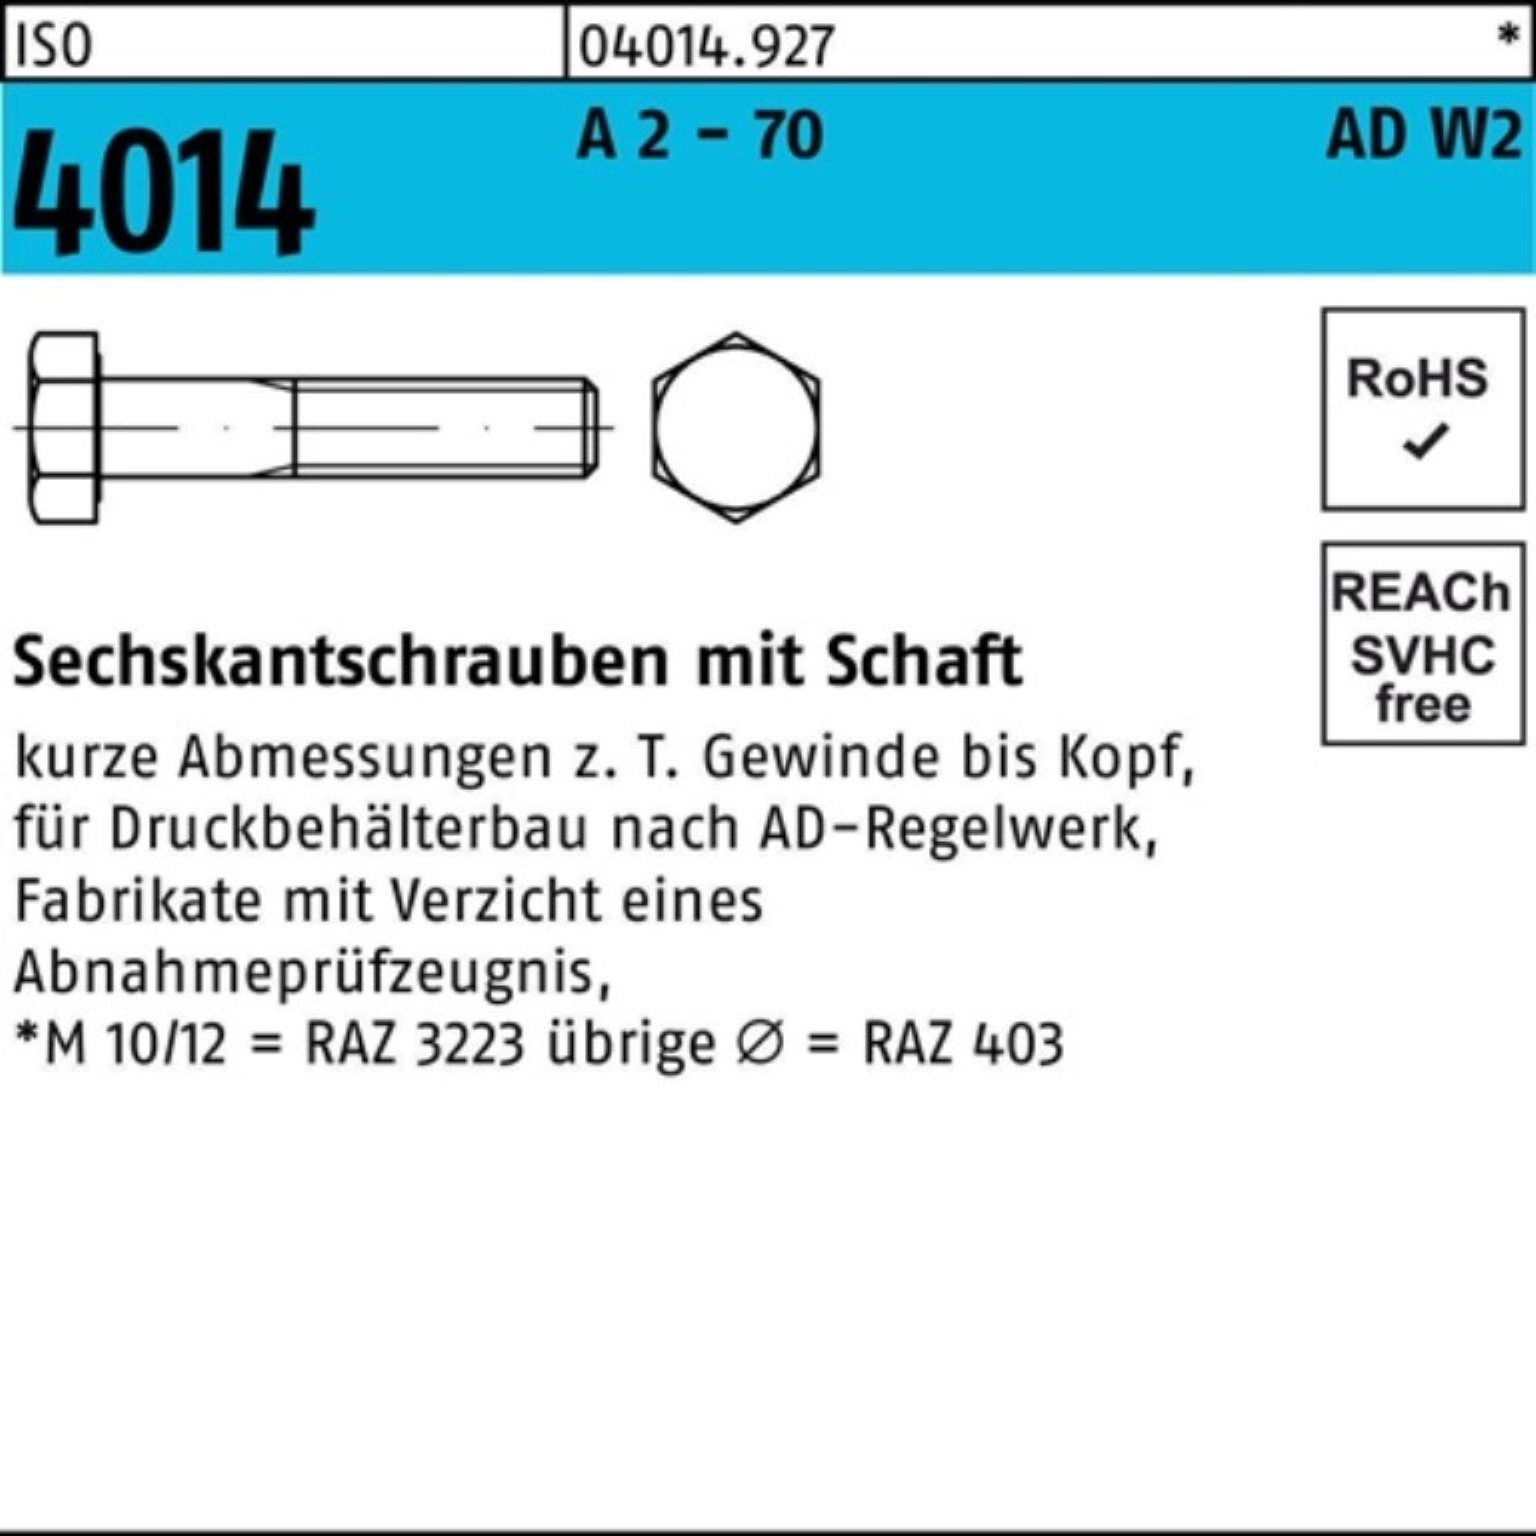 Bufab Sechskantschraube 100er ISO AD-W2 70 Pack A M16x - 4014 Schaft Sechskantschraube 1 2 160